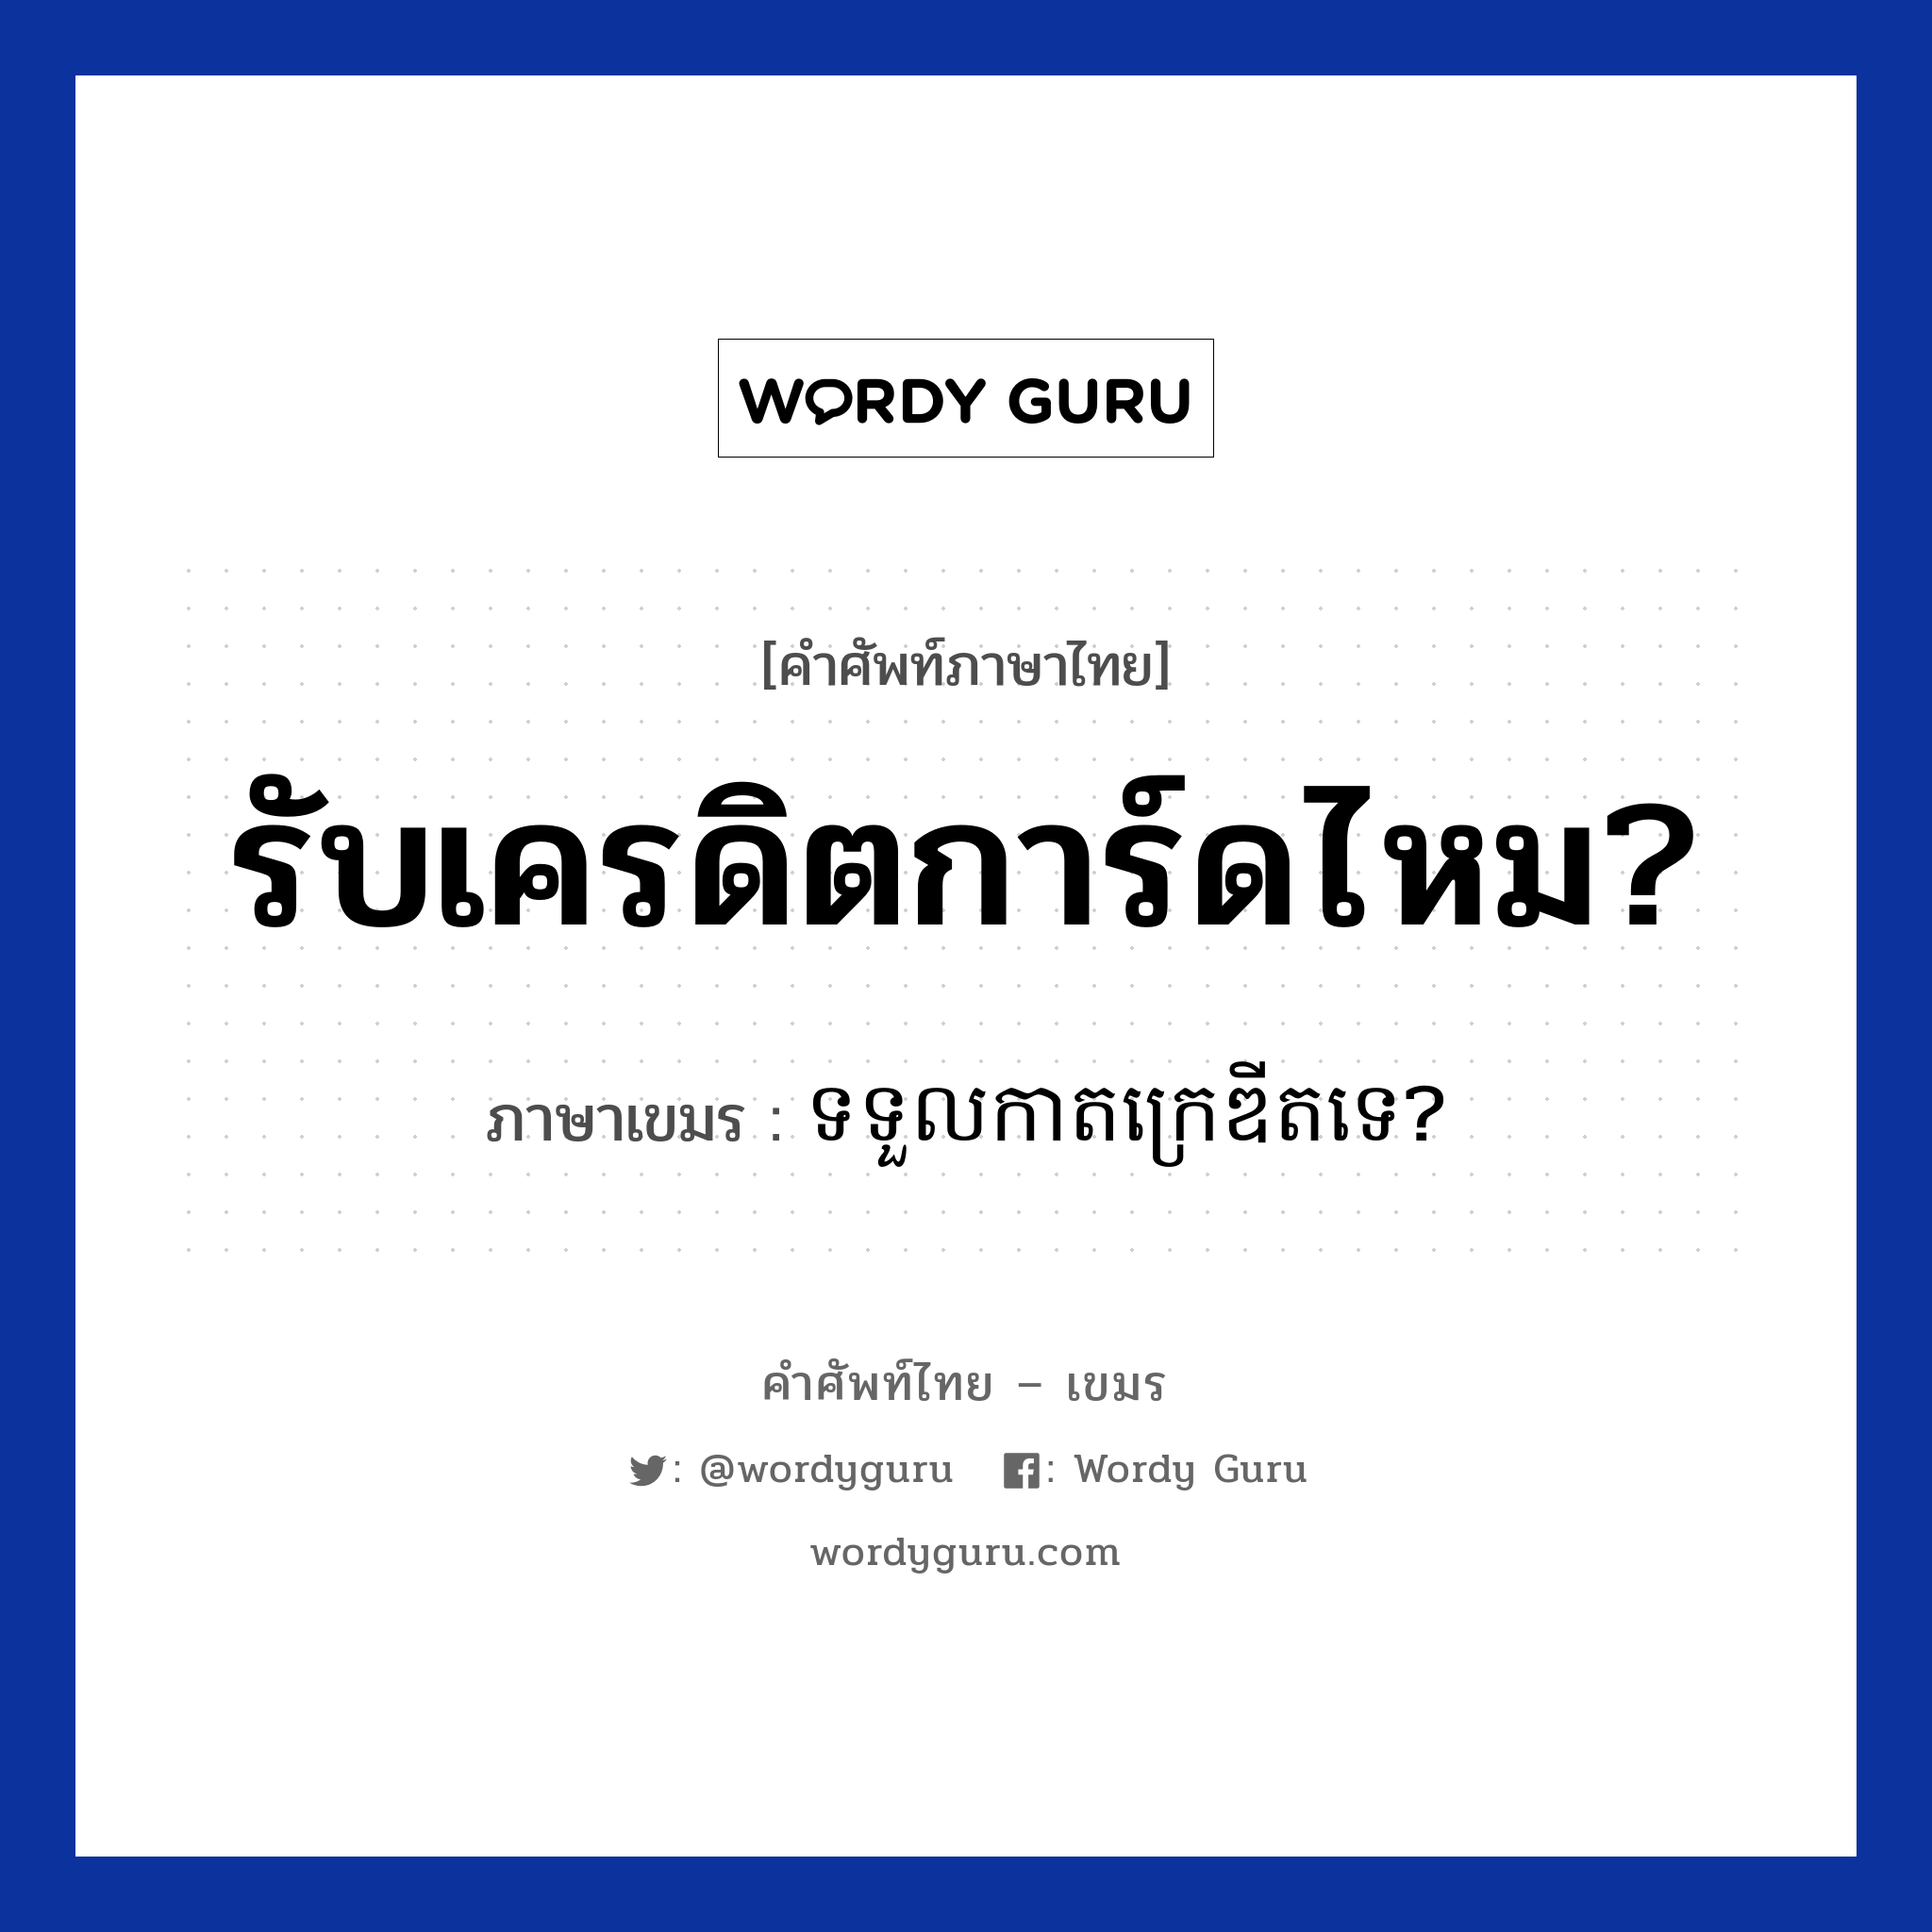 รับเครดิตการ์ดไหม? ภาษาเขมรคืออะไร, คำศัพท์ภาษาไทย - เขมร รับเครดิตการ์ดไหม? ภาษาเขมร ទទួលកាតក្រេឌីតទេ? หมวด บทสนทนาเกี่ยวกับอาหาร Tortoul kart credit te? หมวด บทสนทนาเกี่ยวกับอาหาร